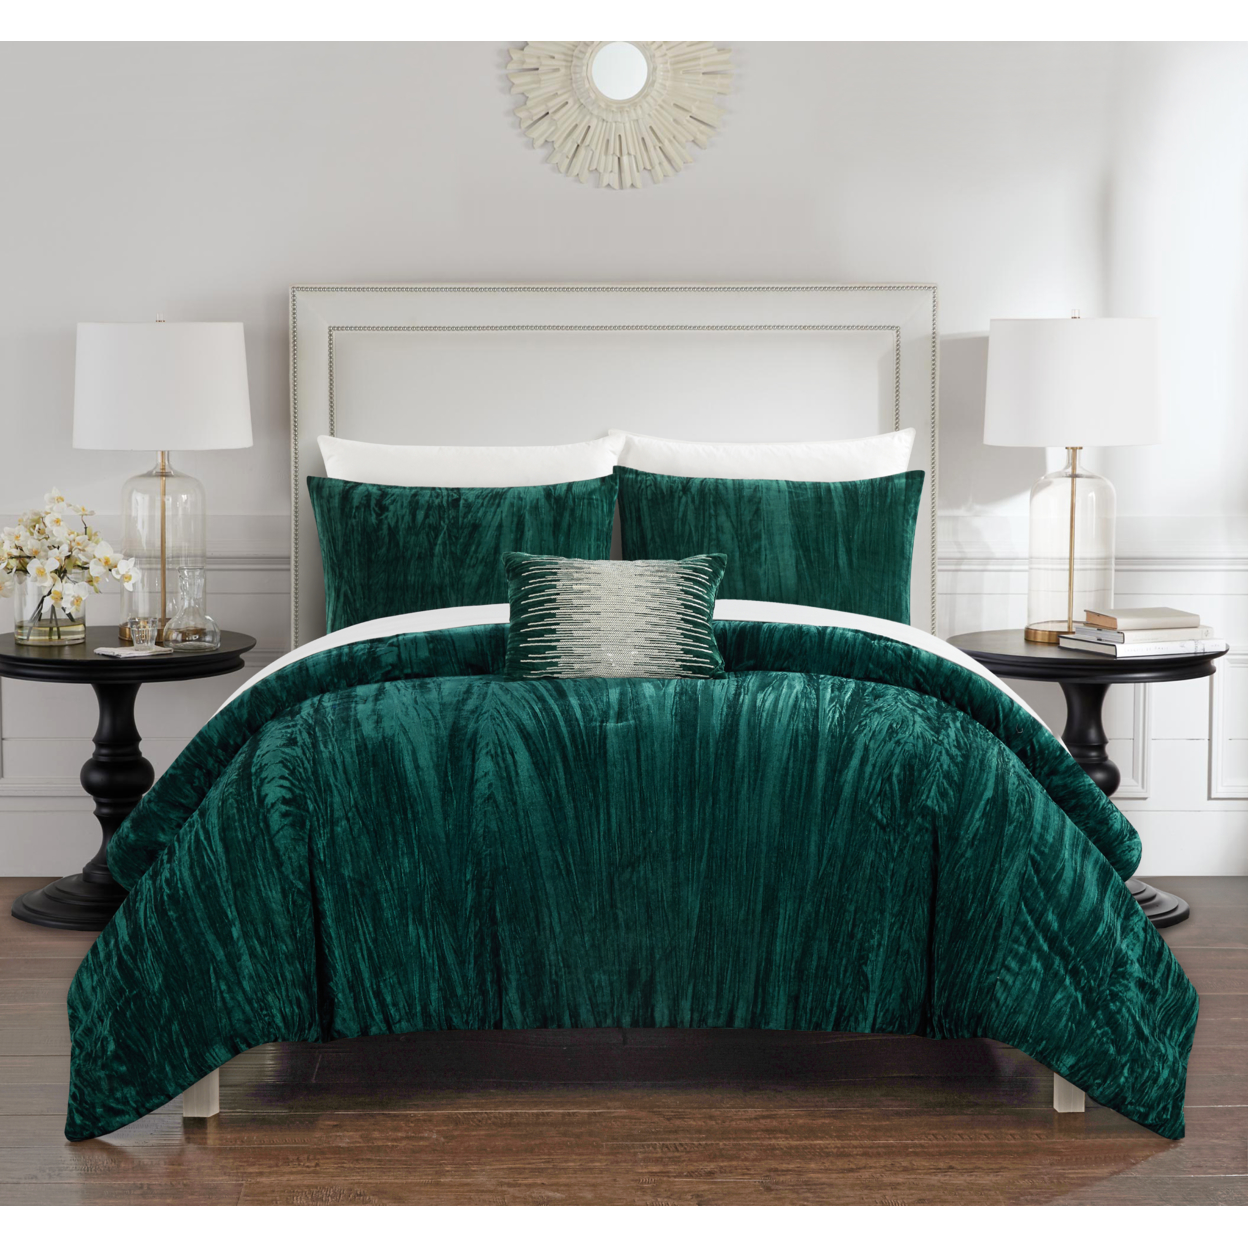 Merieta 4 Piece Comforter Set Crinkle Crushed Velvet Bedding - Decorative Pillow Shams Included - Grey, Queen